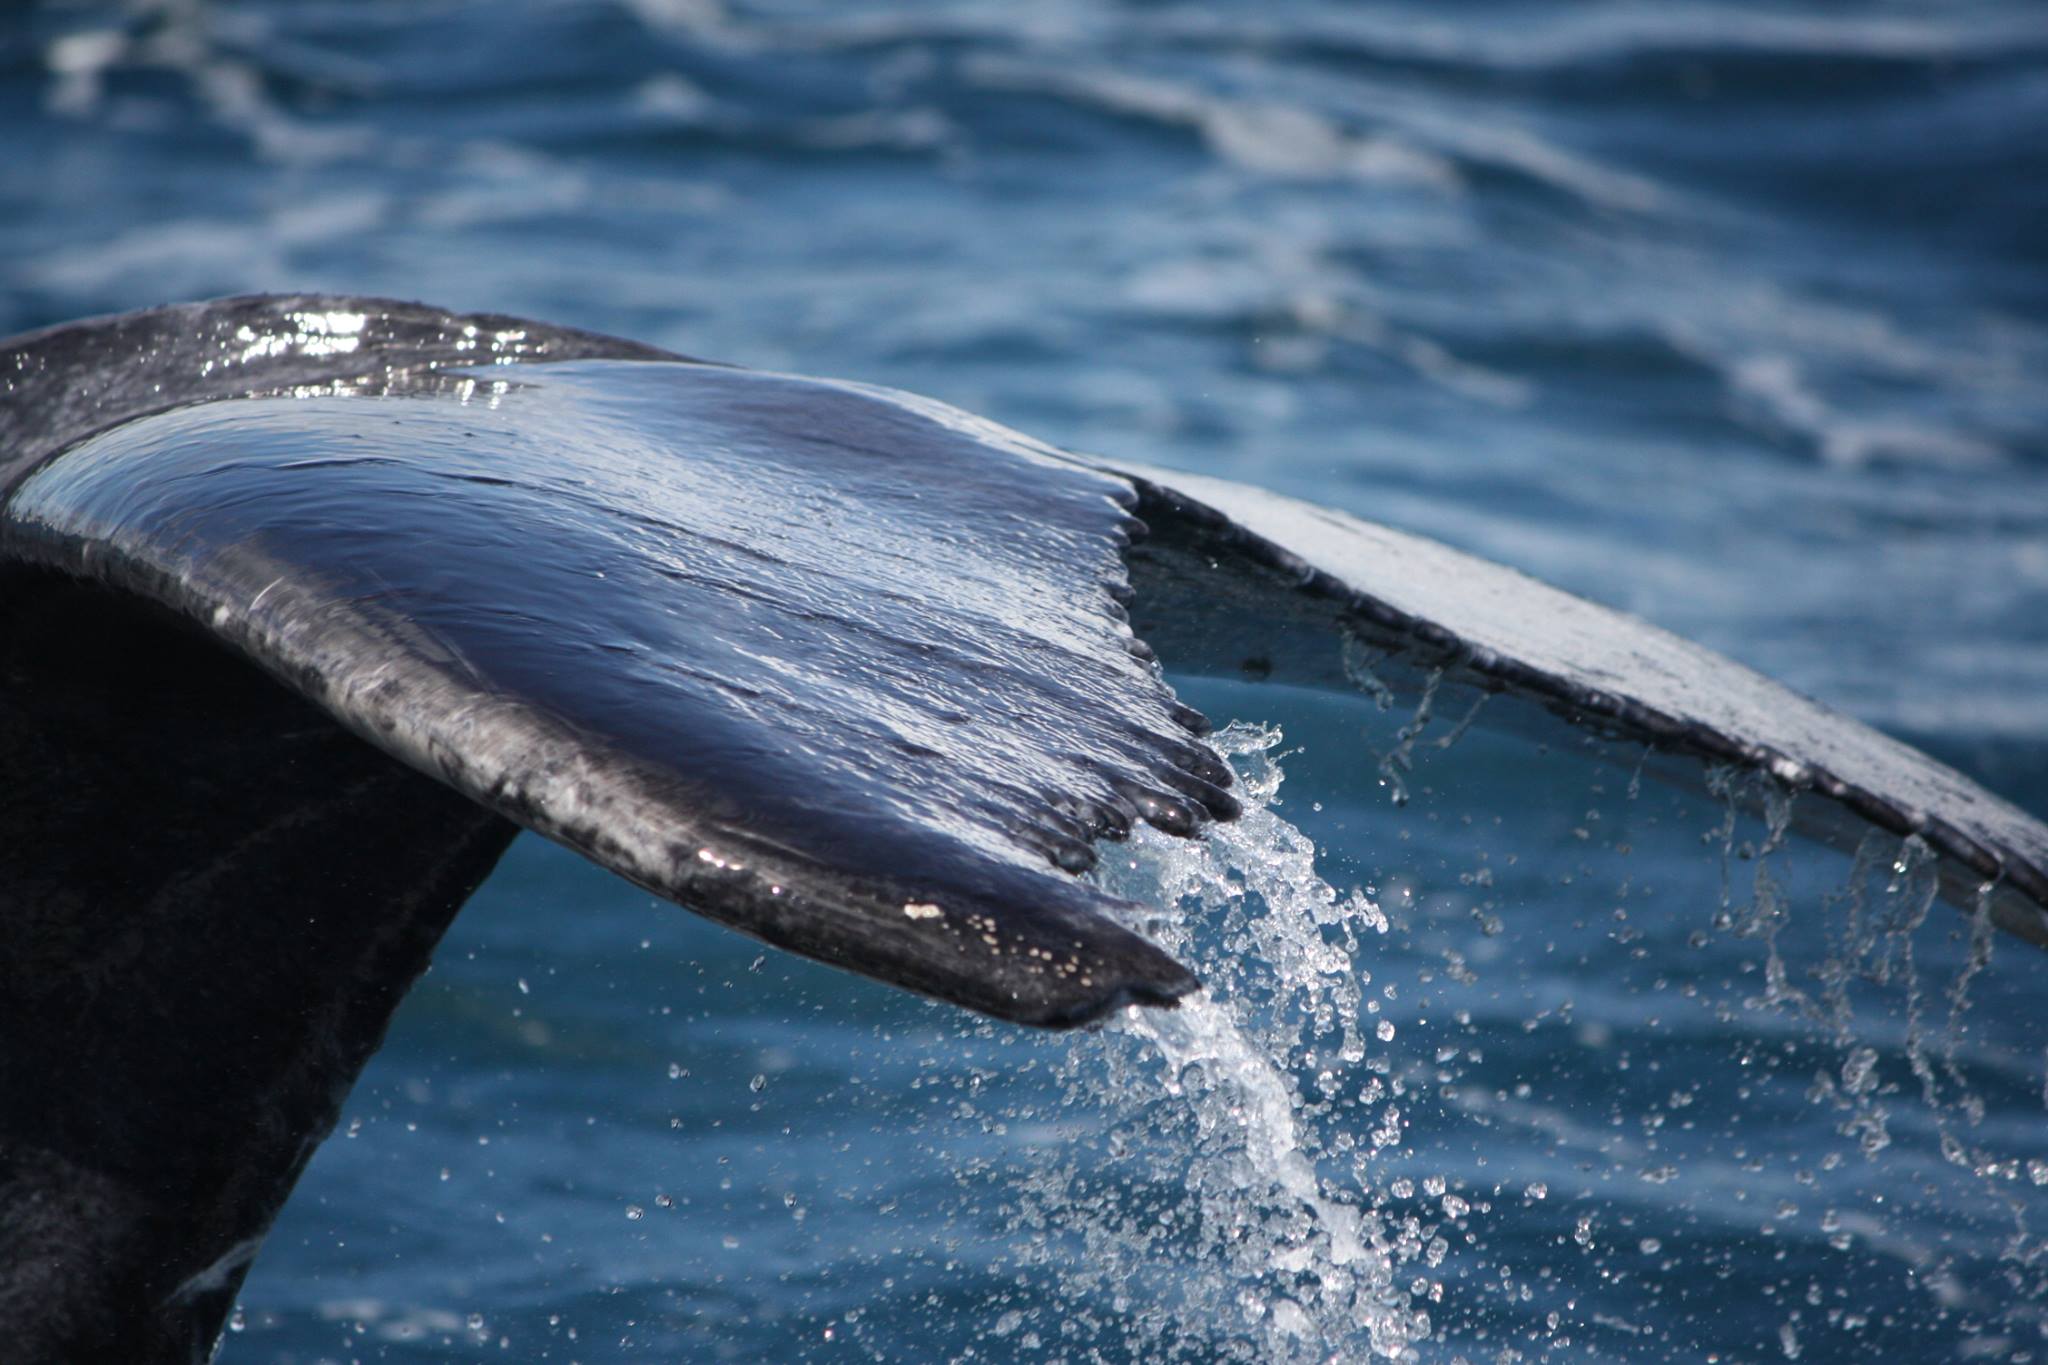 Des touristes embrassent une baleine : la vidéo buzz qui fait débat